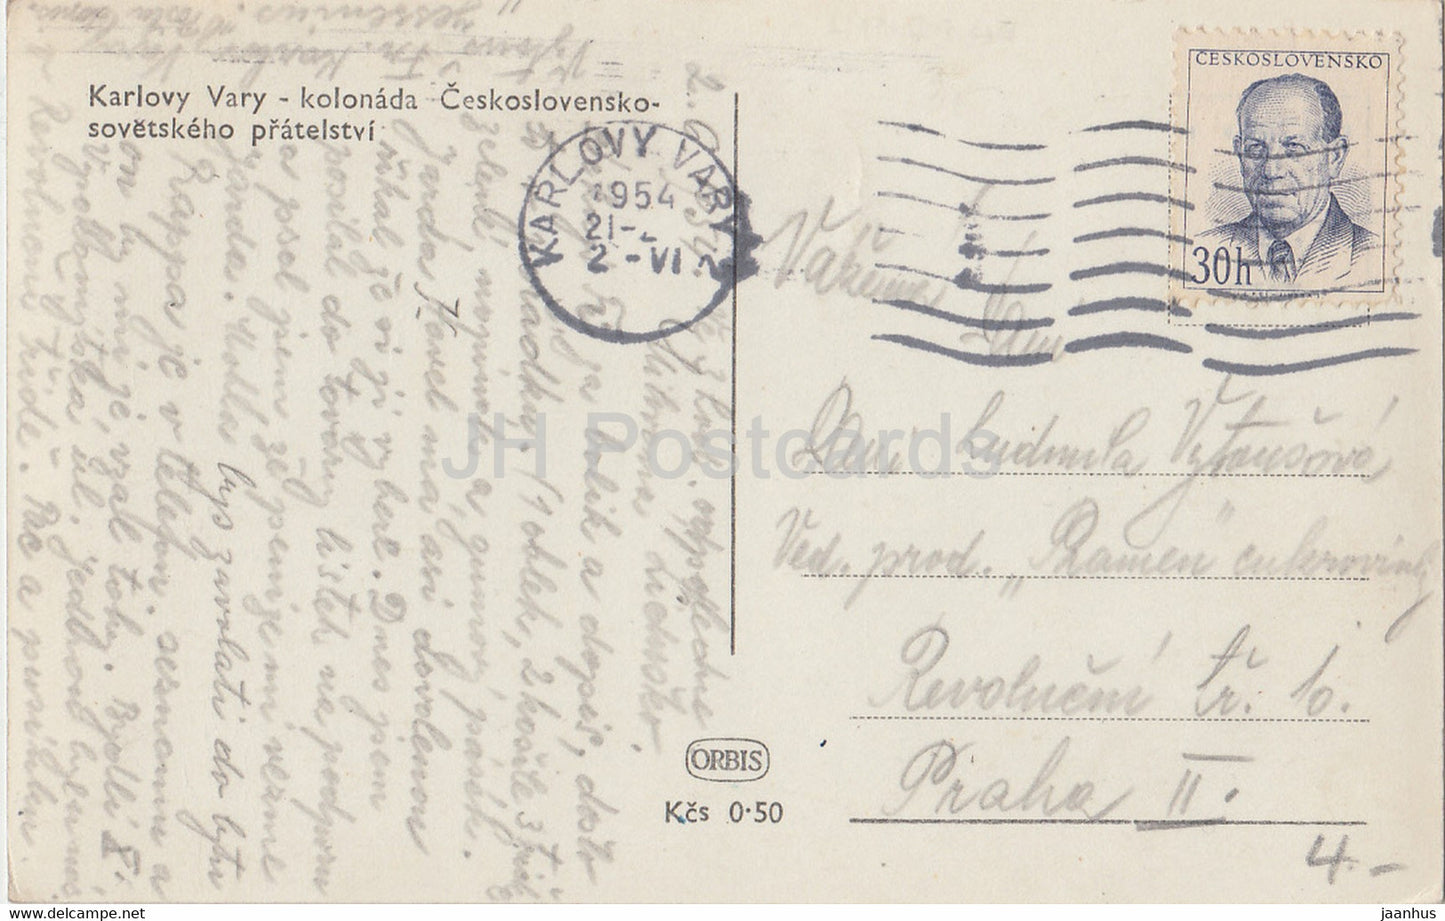 Karlsbad - Karlsbad - Kolonada - Kolonnade - alte Postkarte - 1954 - Tschechoslowakei - Tschechische Republik - gebraucht